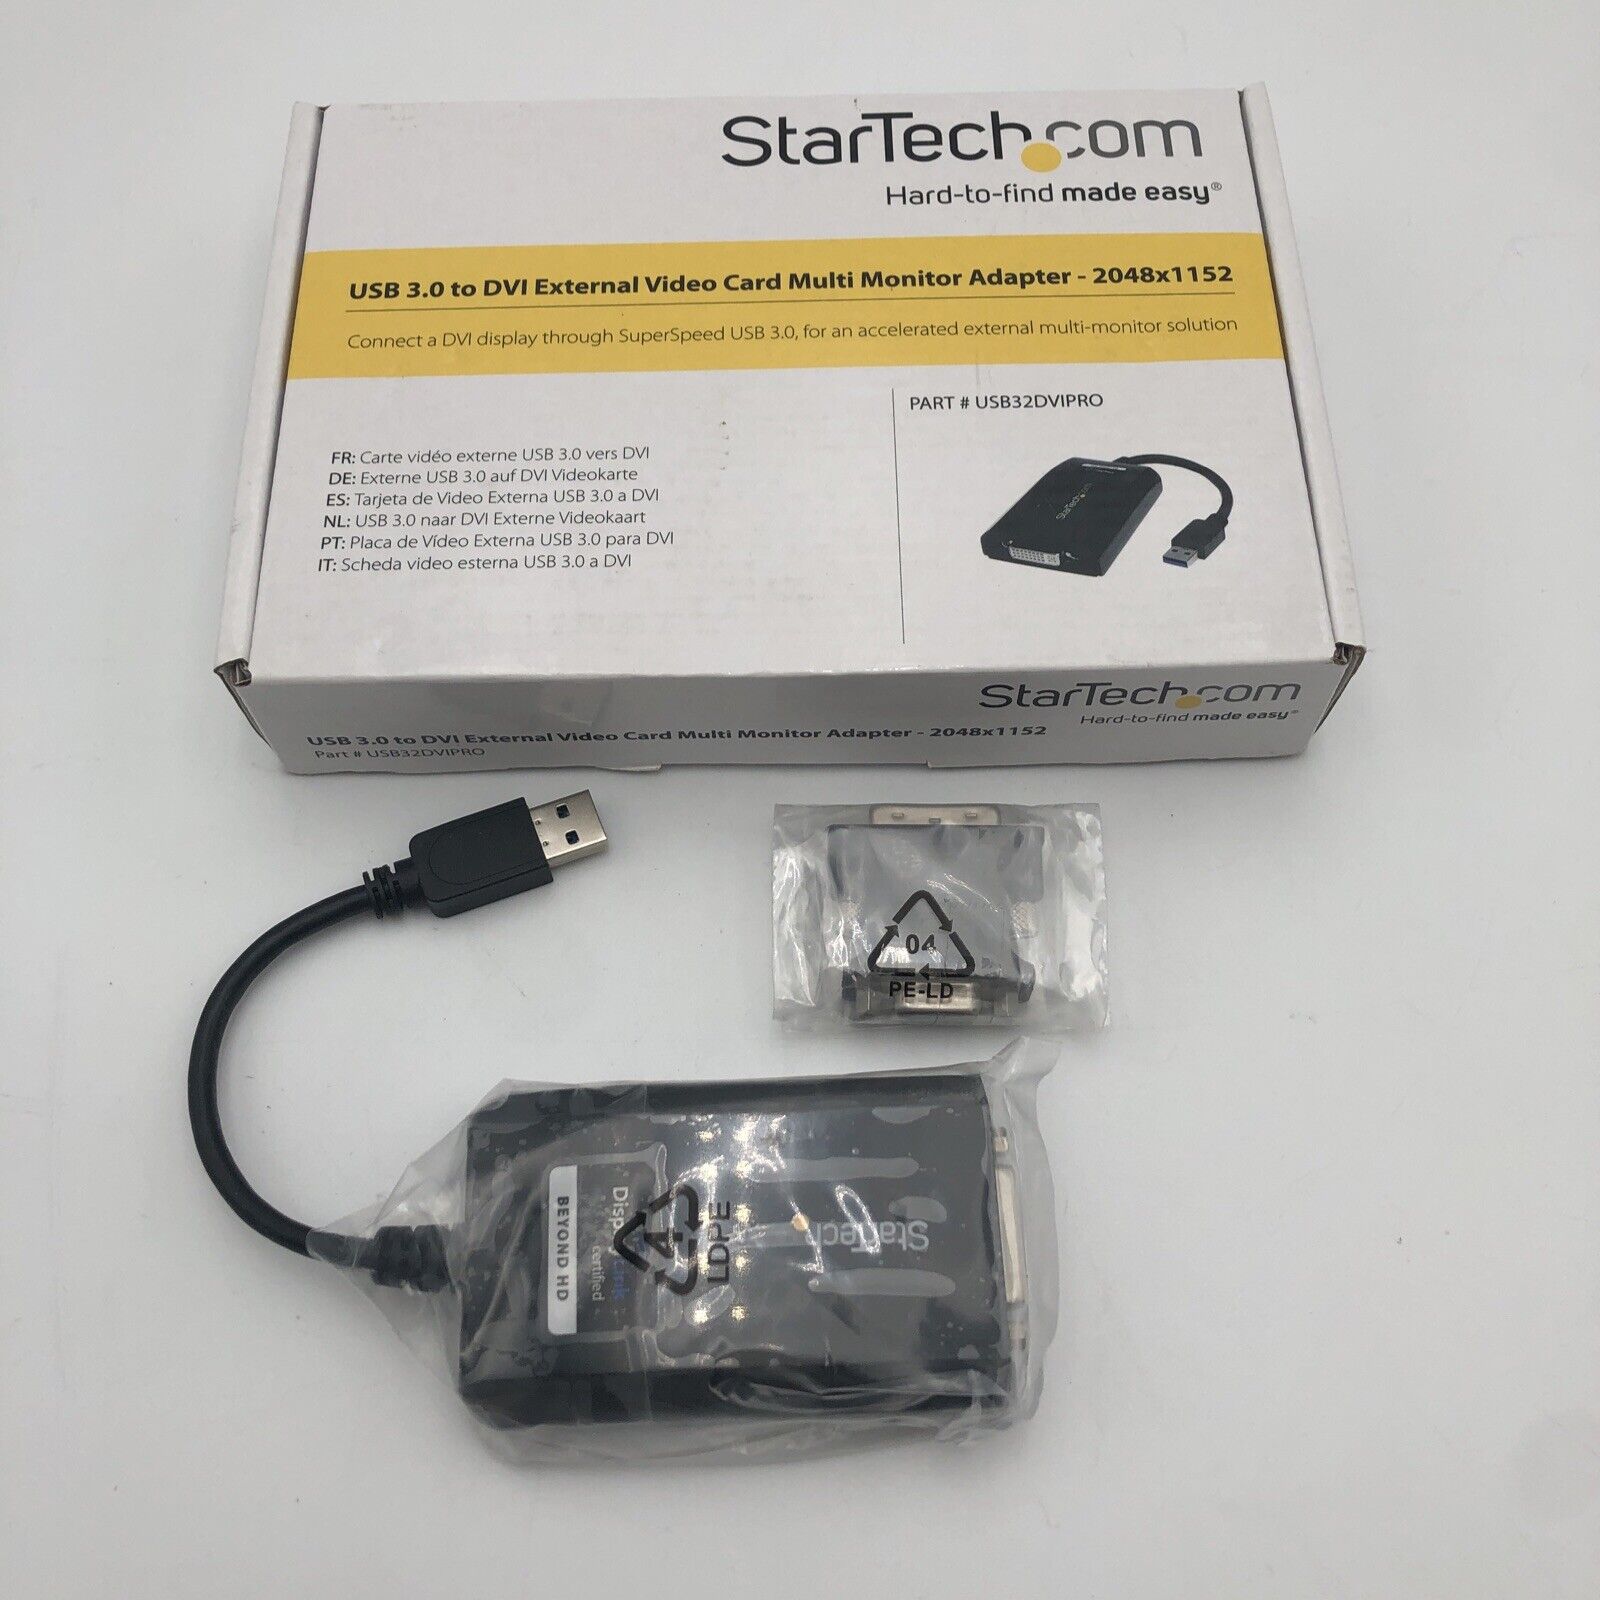 LOT OF 2 NOS StarTech.com USB32DVIPRO USB 3.0 Multi-Monitor DVI VGA Adapter READ